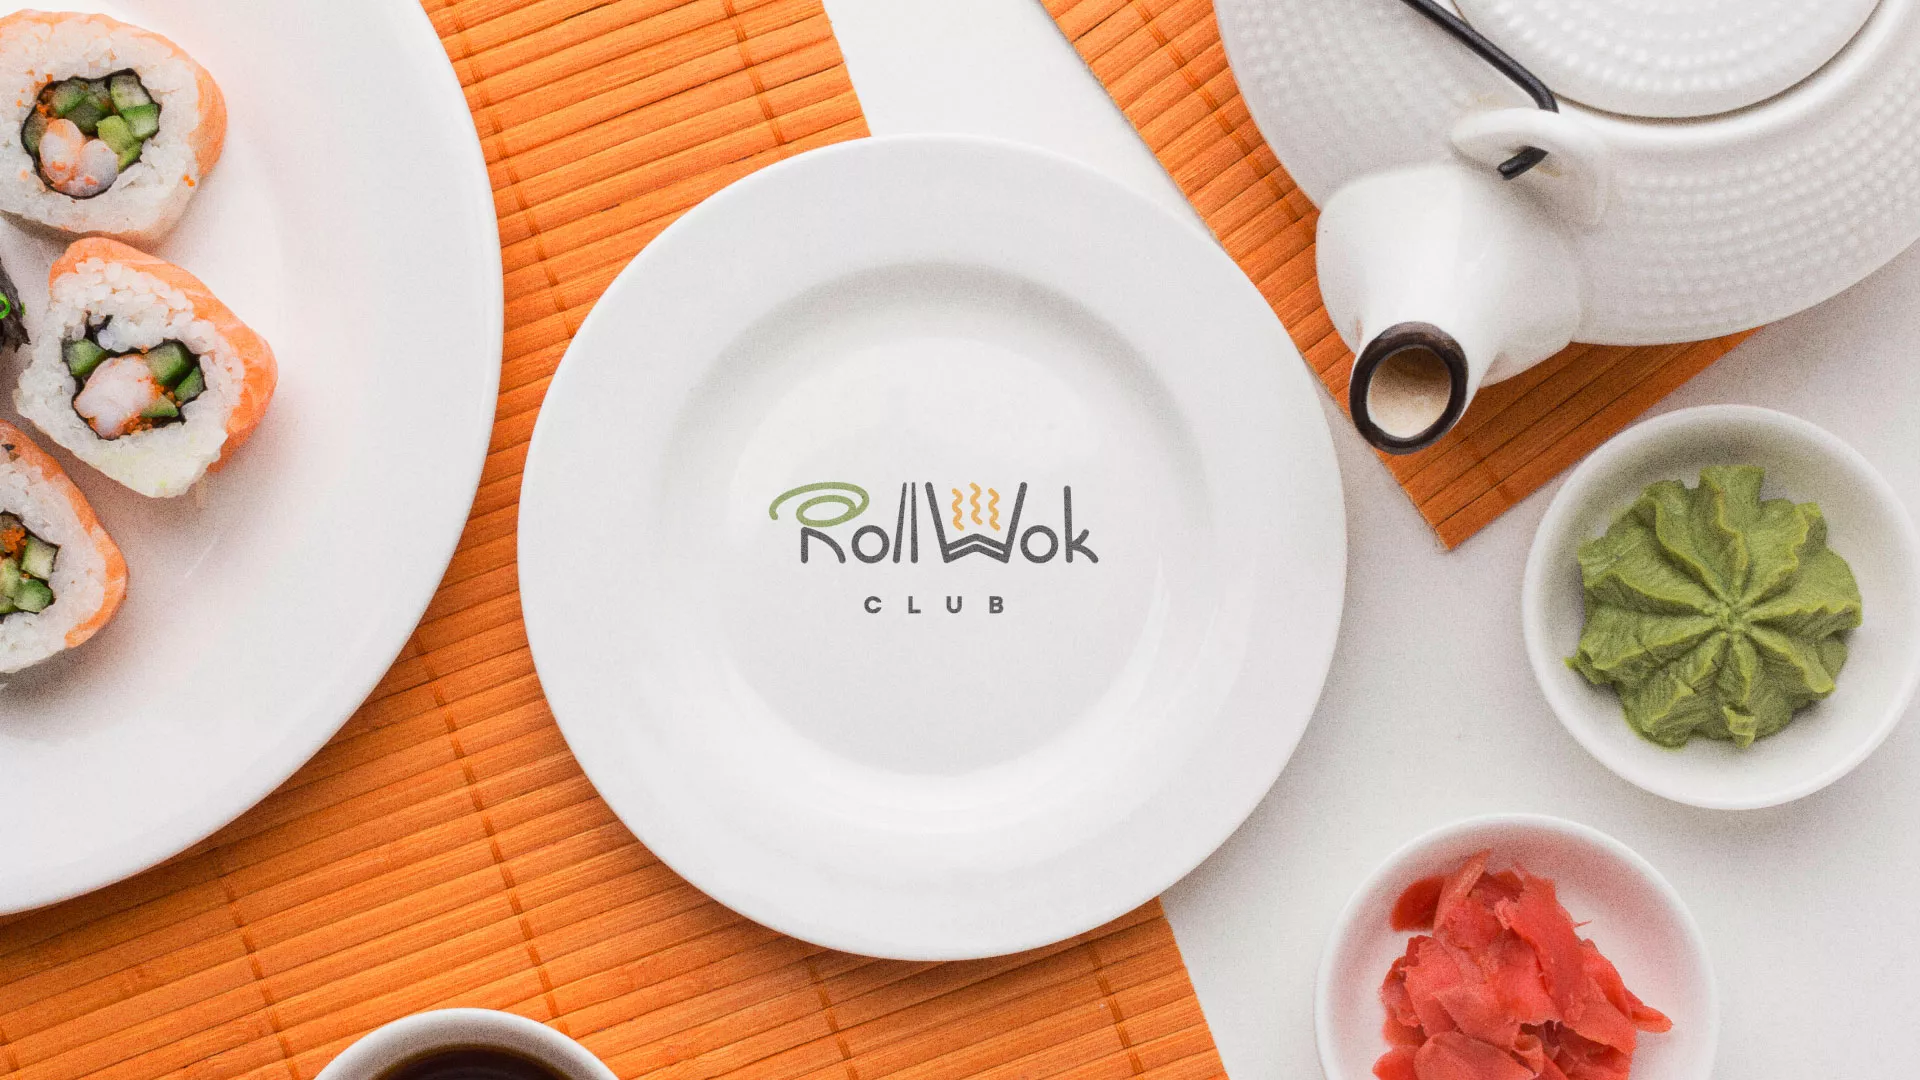 Разработка логотипа и фирменного стиля суши-бара «Roll Wok Club» в Кедровом